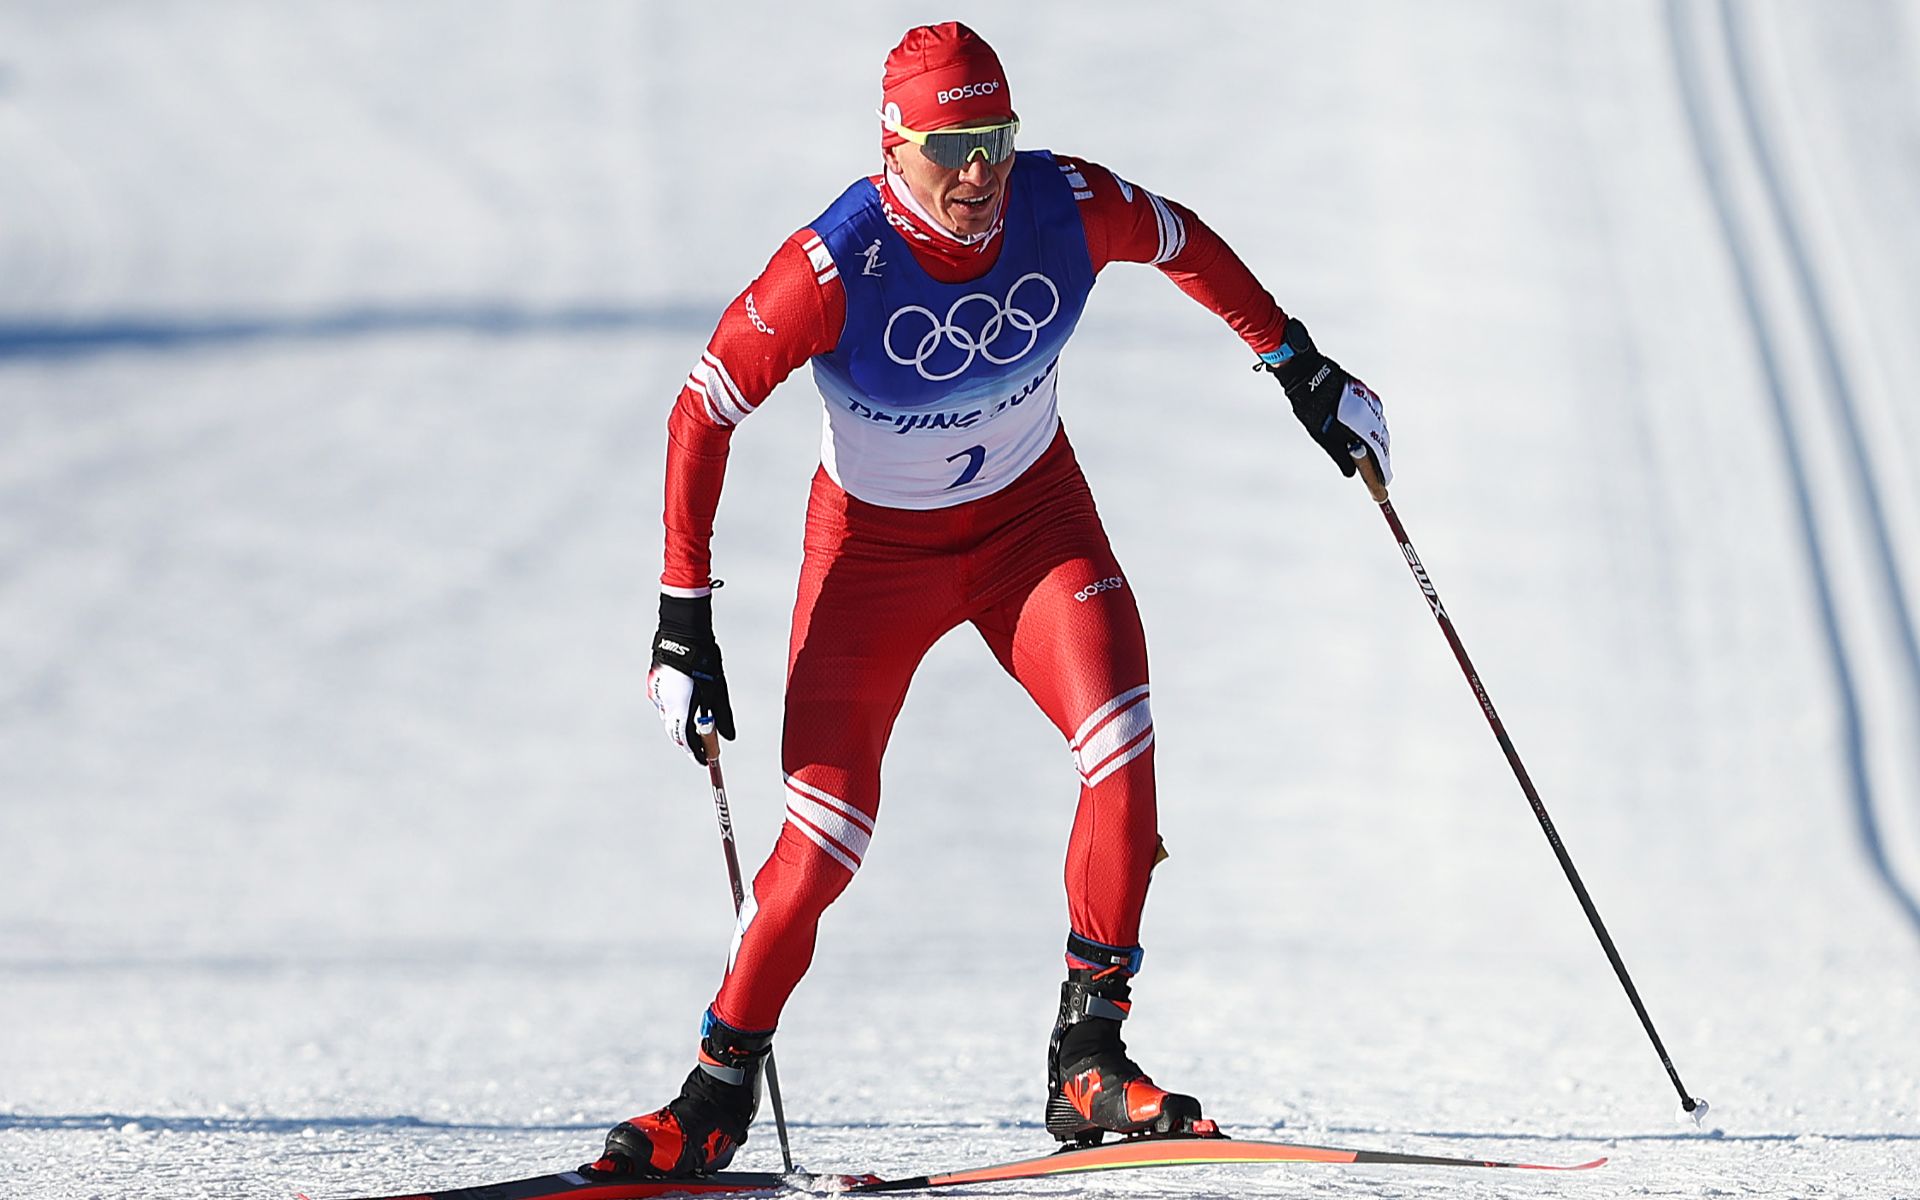 FIS отстранила российских лыжников и сноубордистов от соревнований в сезоне-2022/23